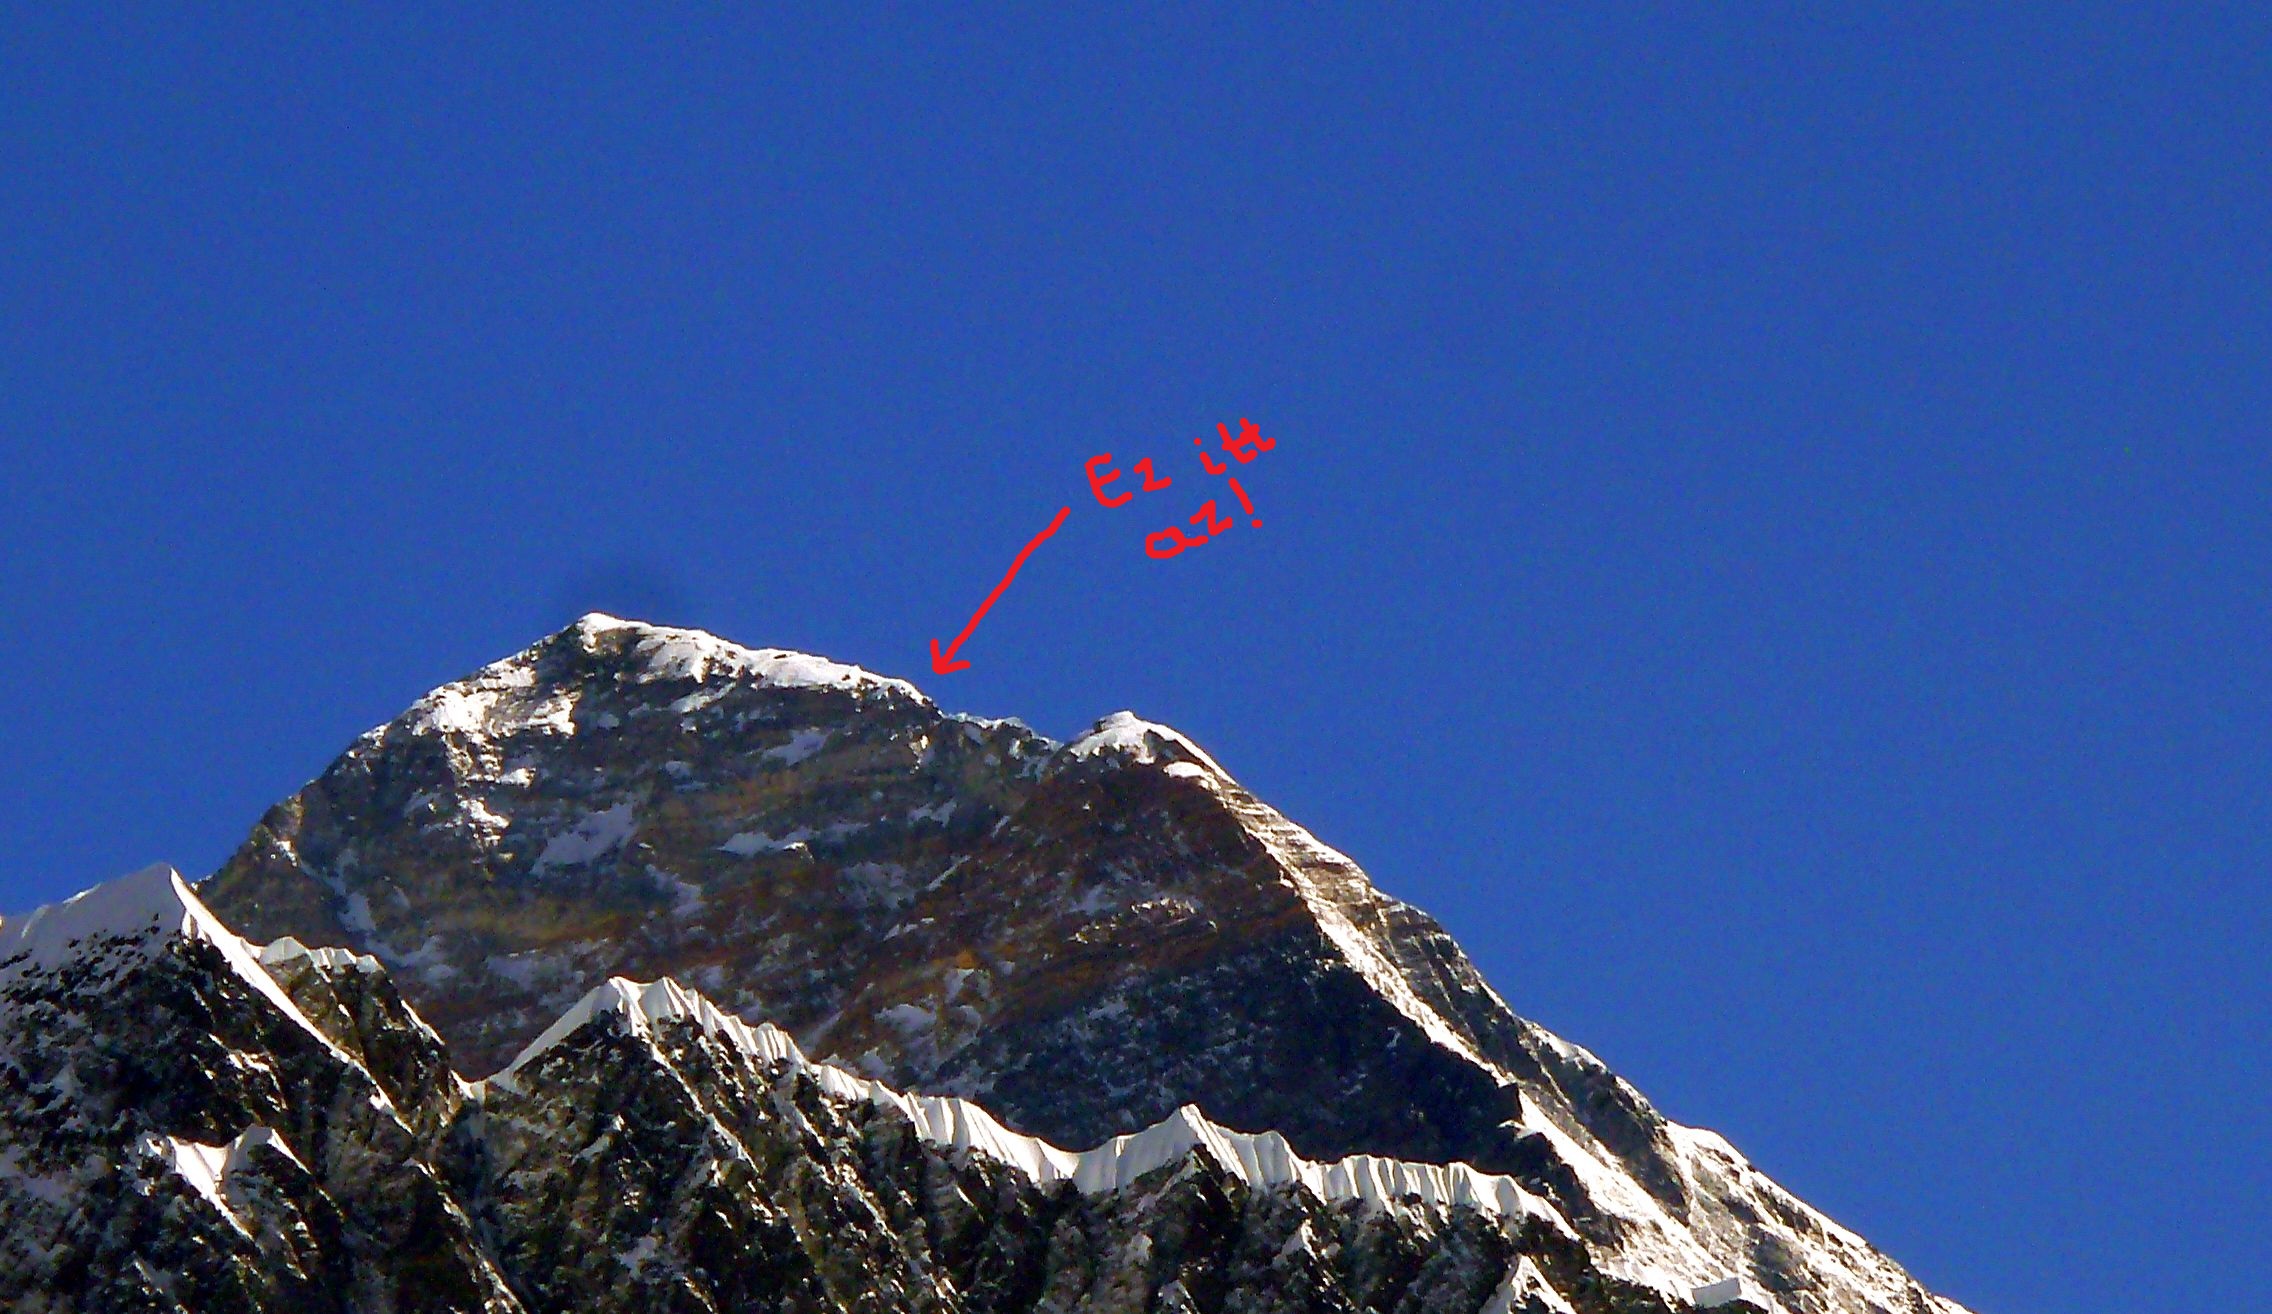 Elpusztult a Hillary-lépcső, a Mount Everest leghíresebb sziklája